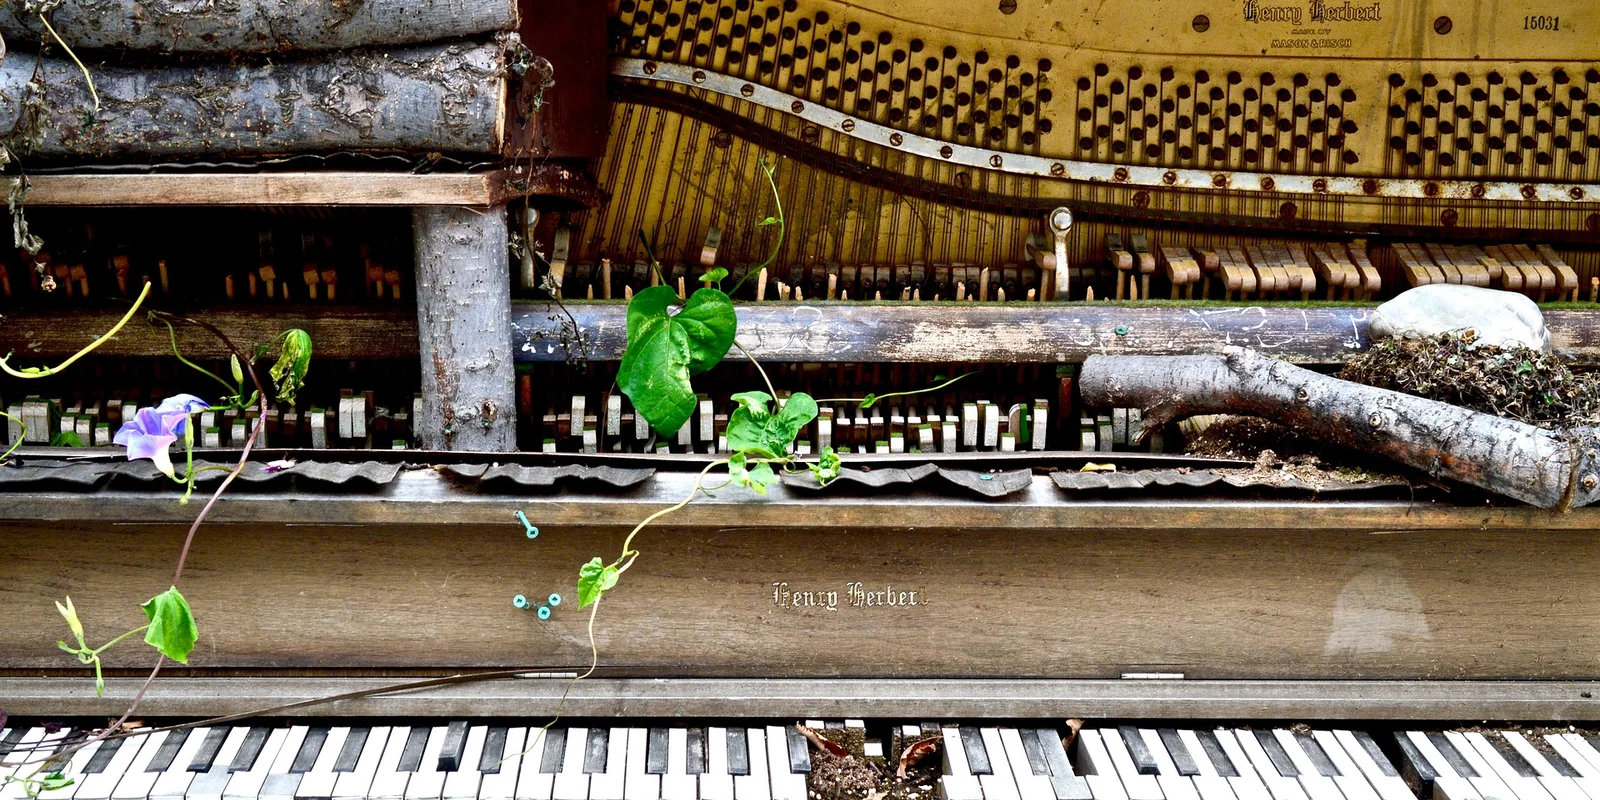 Ein altes kaputtes Piano, aus dem Pflanzen herauswachsen